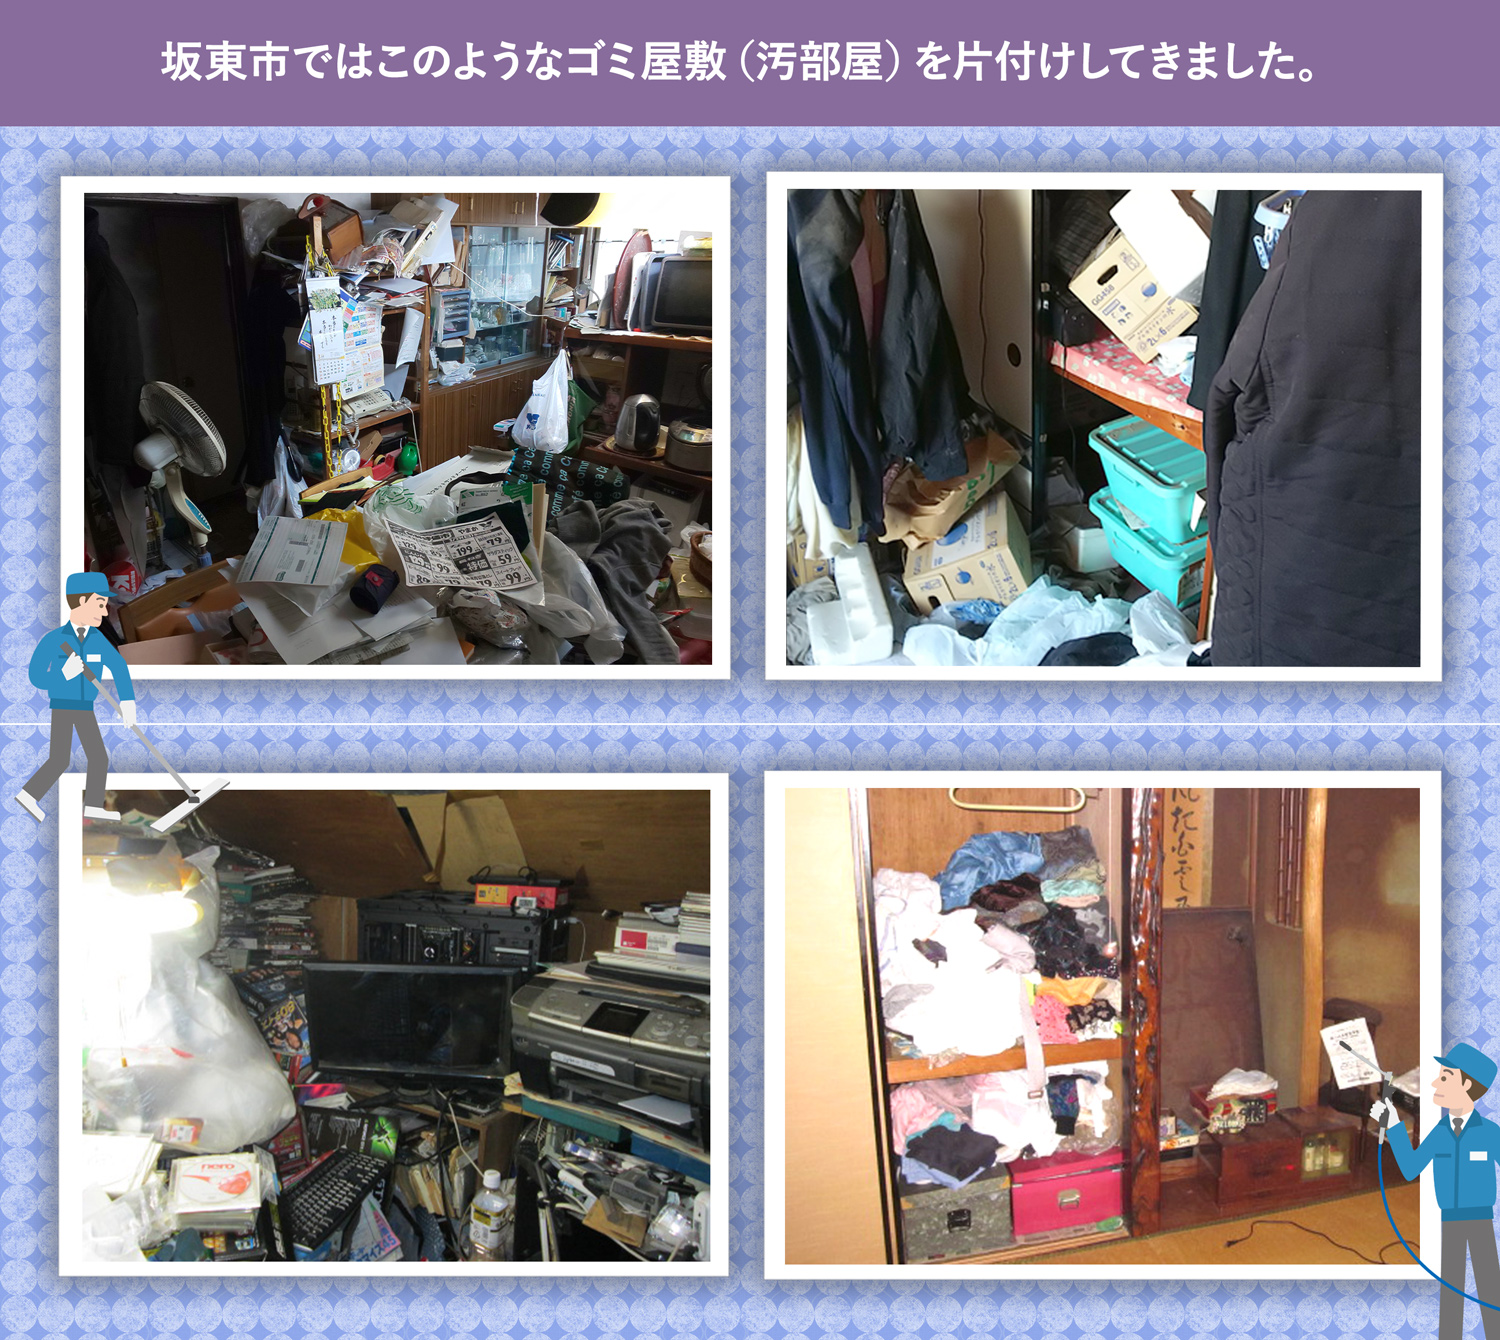 坂東市で行ったで行ったごみ屋敷・汚部屋の片付けの一例